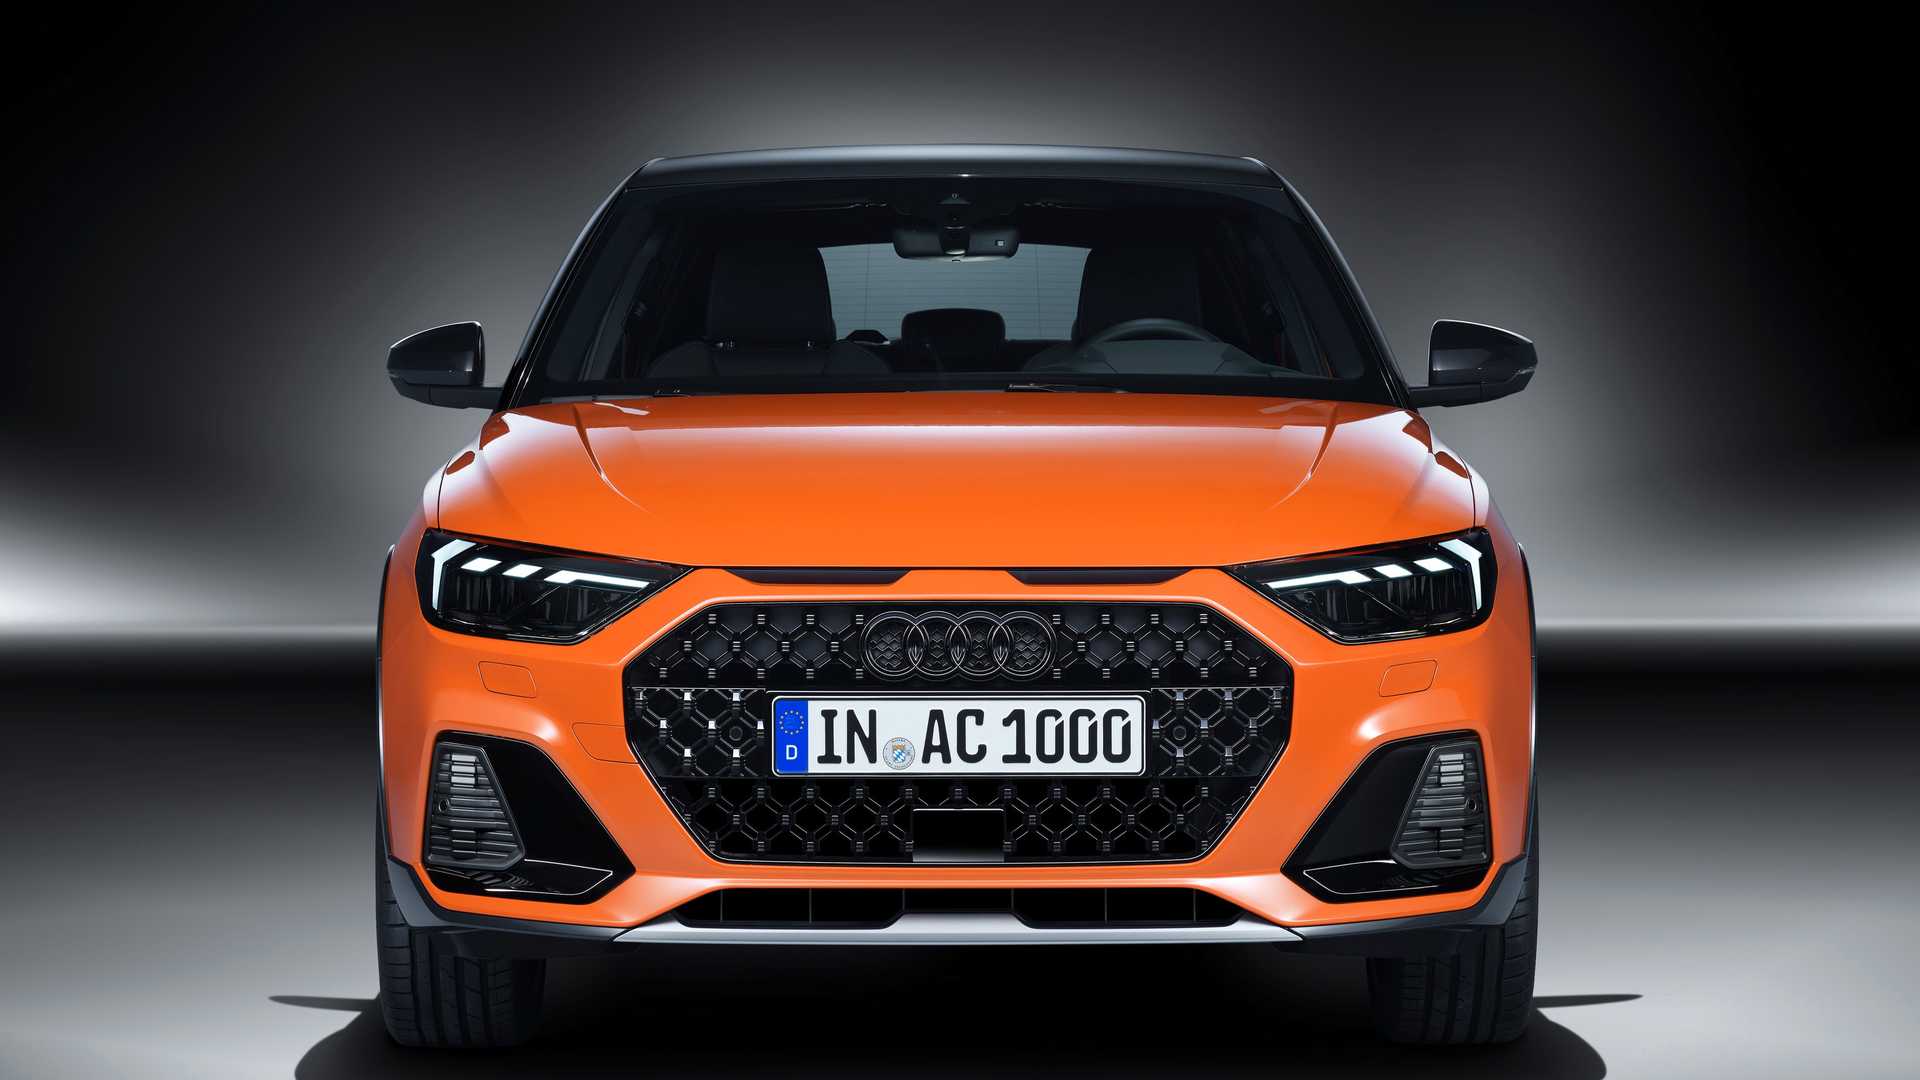 Oficial: Audi A1 Citicarver, llega el crossover más pequeño de Ingolstadt